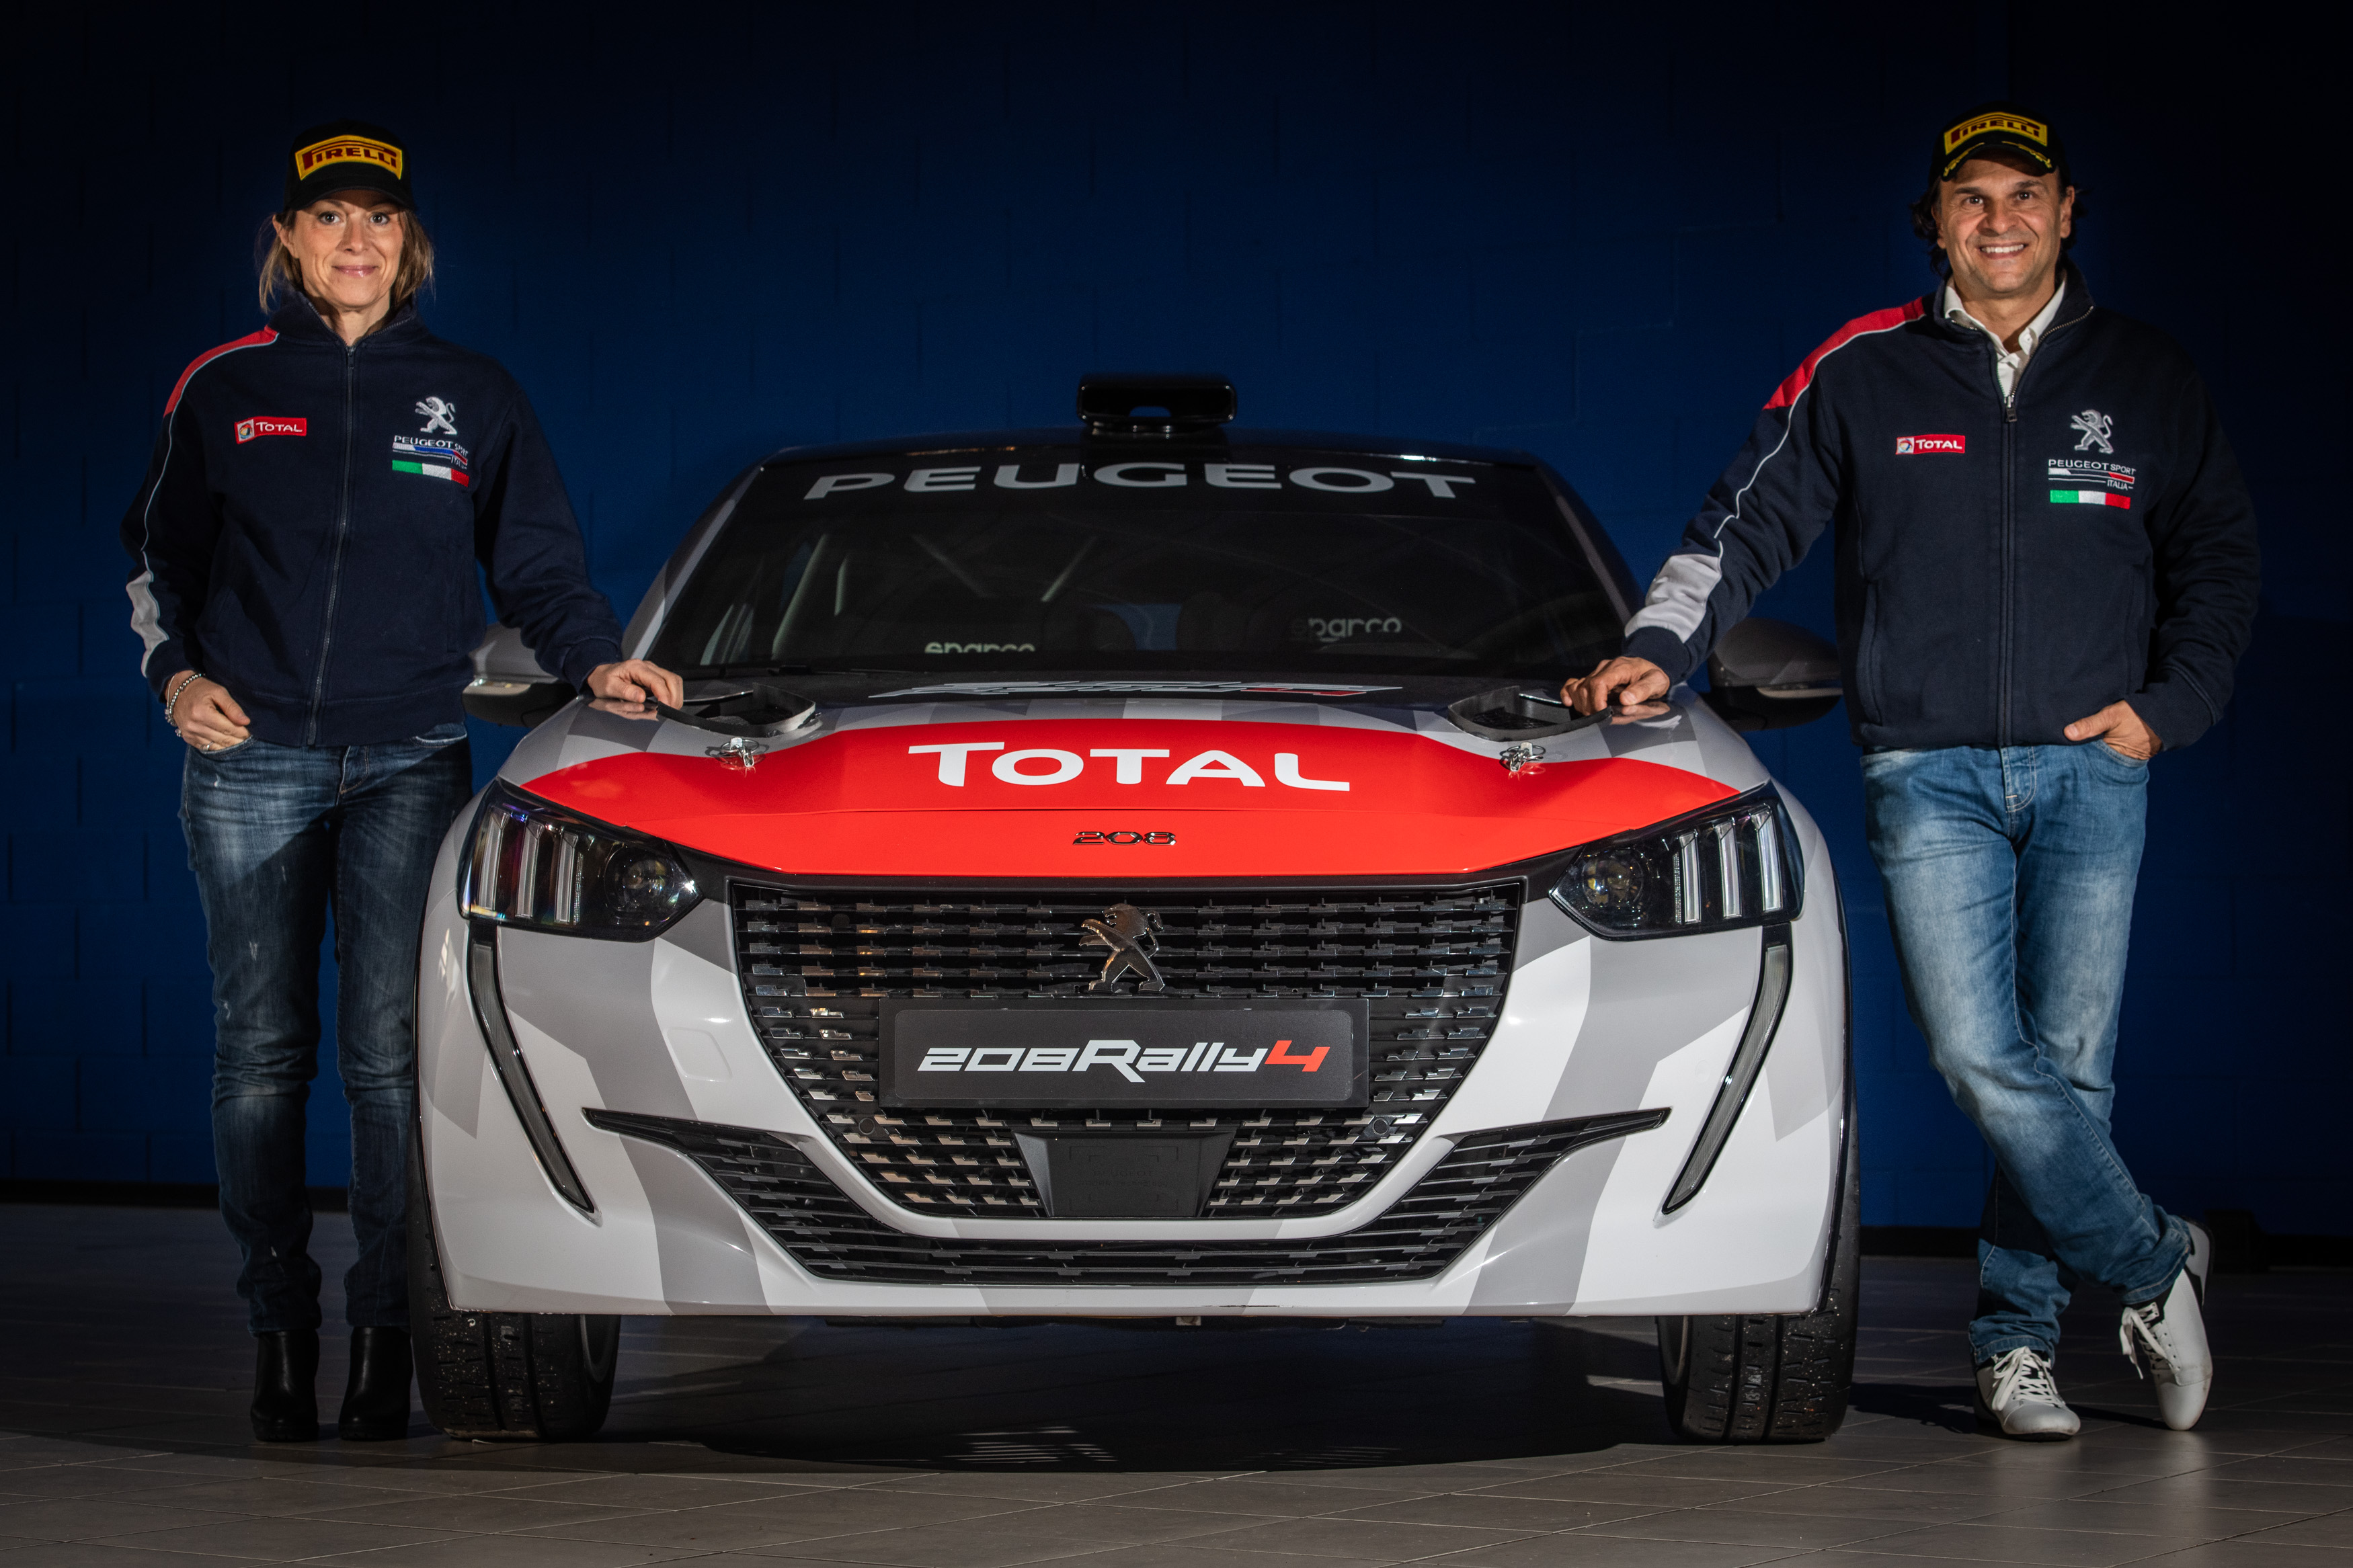 Una nuova Alpine per celebrare la passione del rally - image Peugeot-208-Rally-4-con-Paolo-e-Anna on https://motori.net